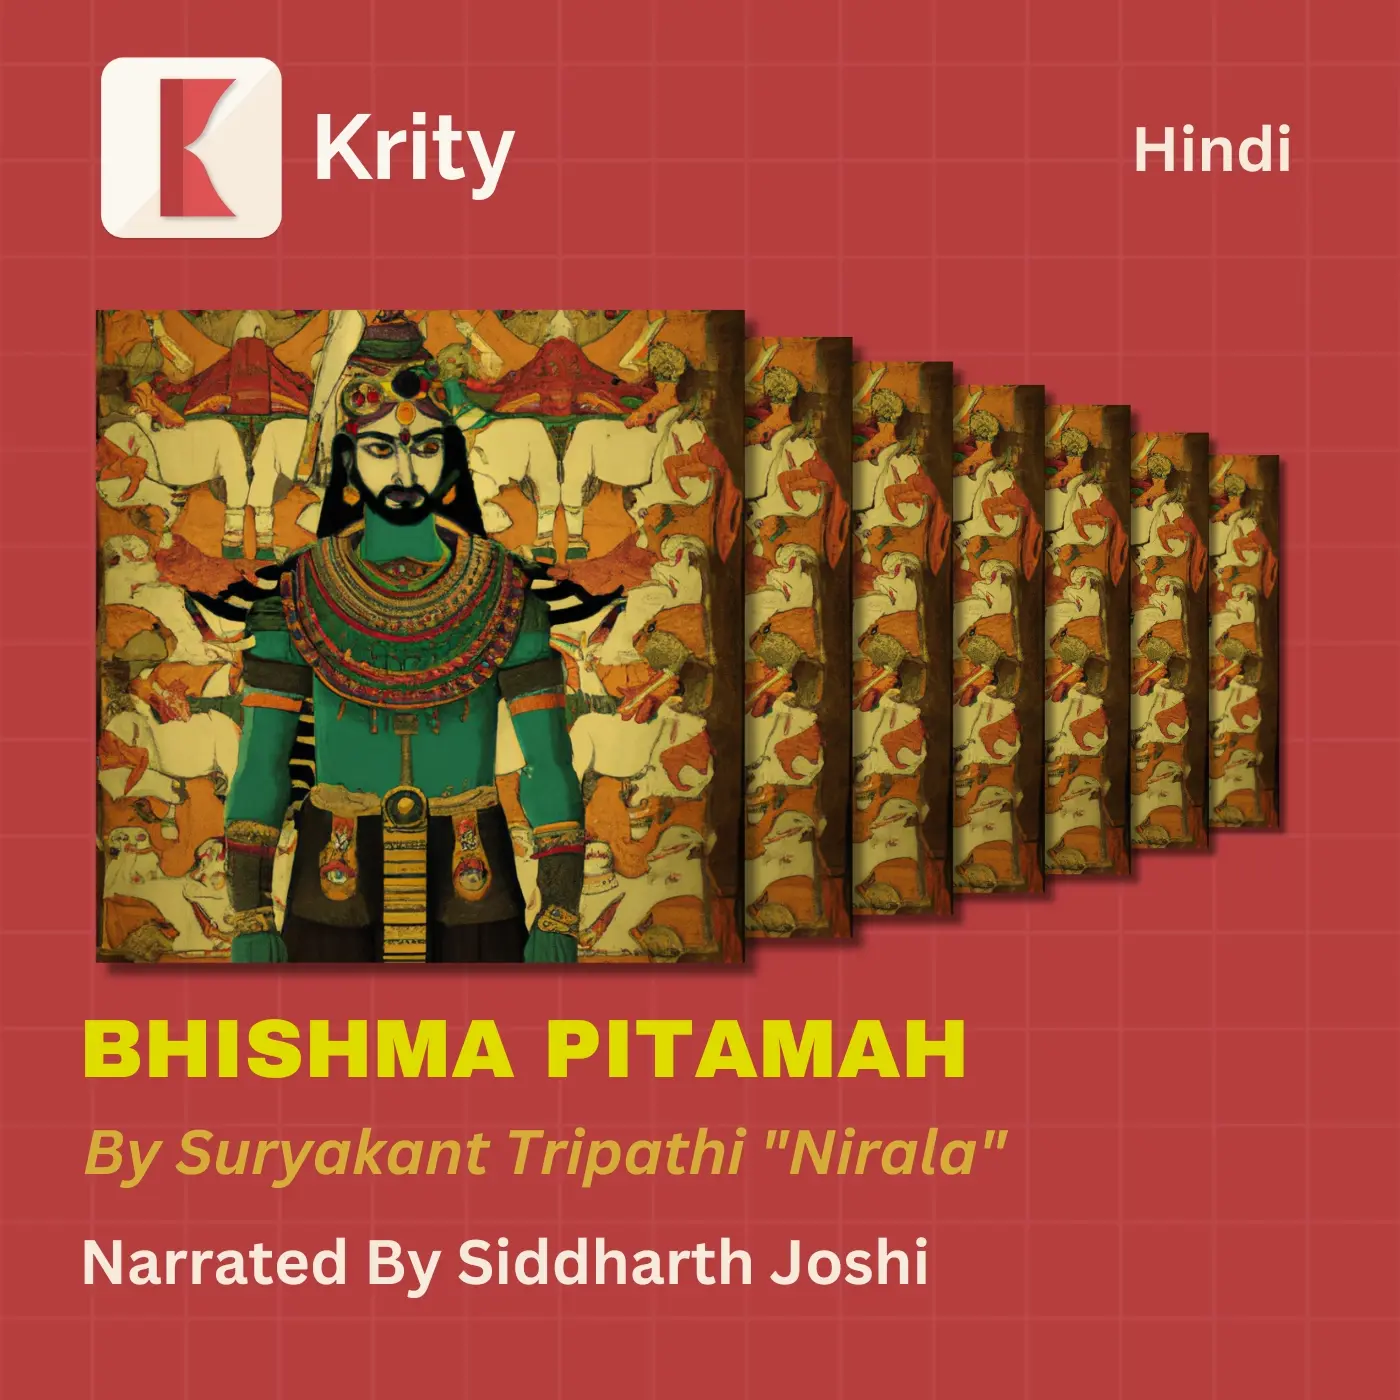 Bhishma Pitamah by Suryakant Tripathi "Nirala"